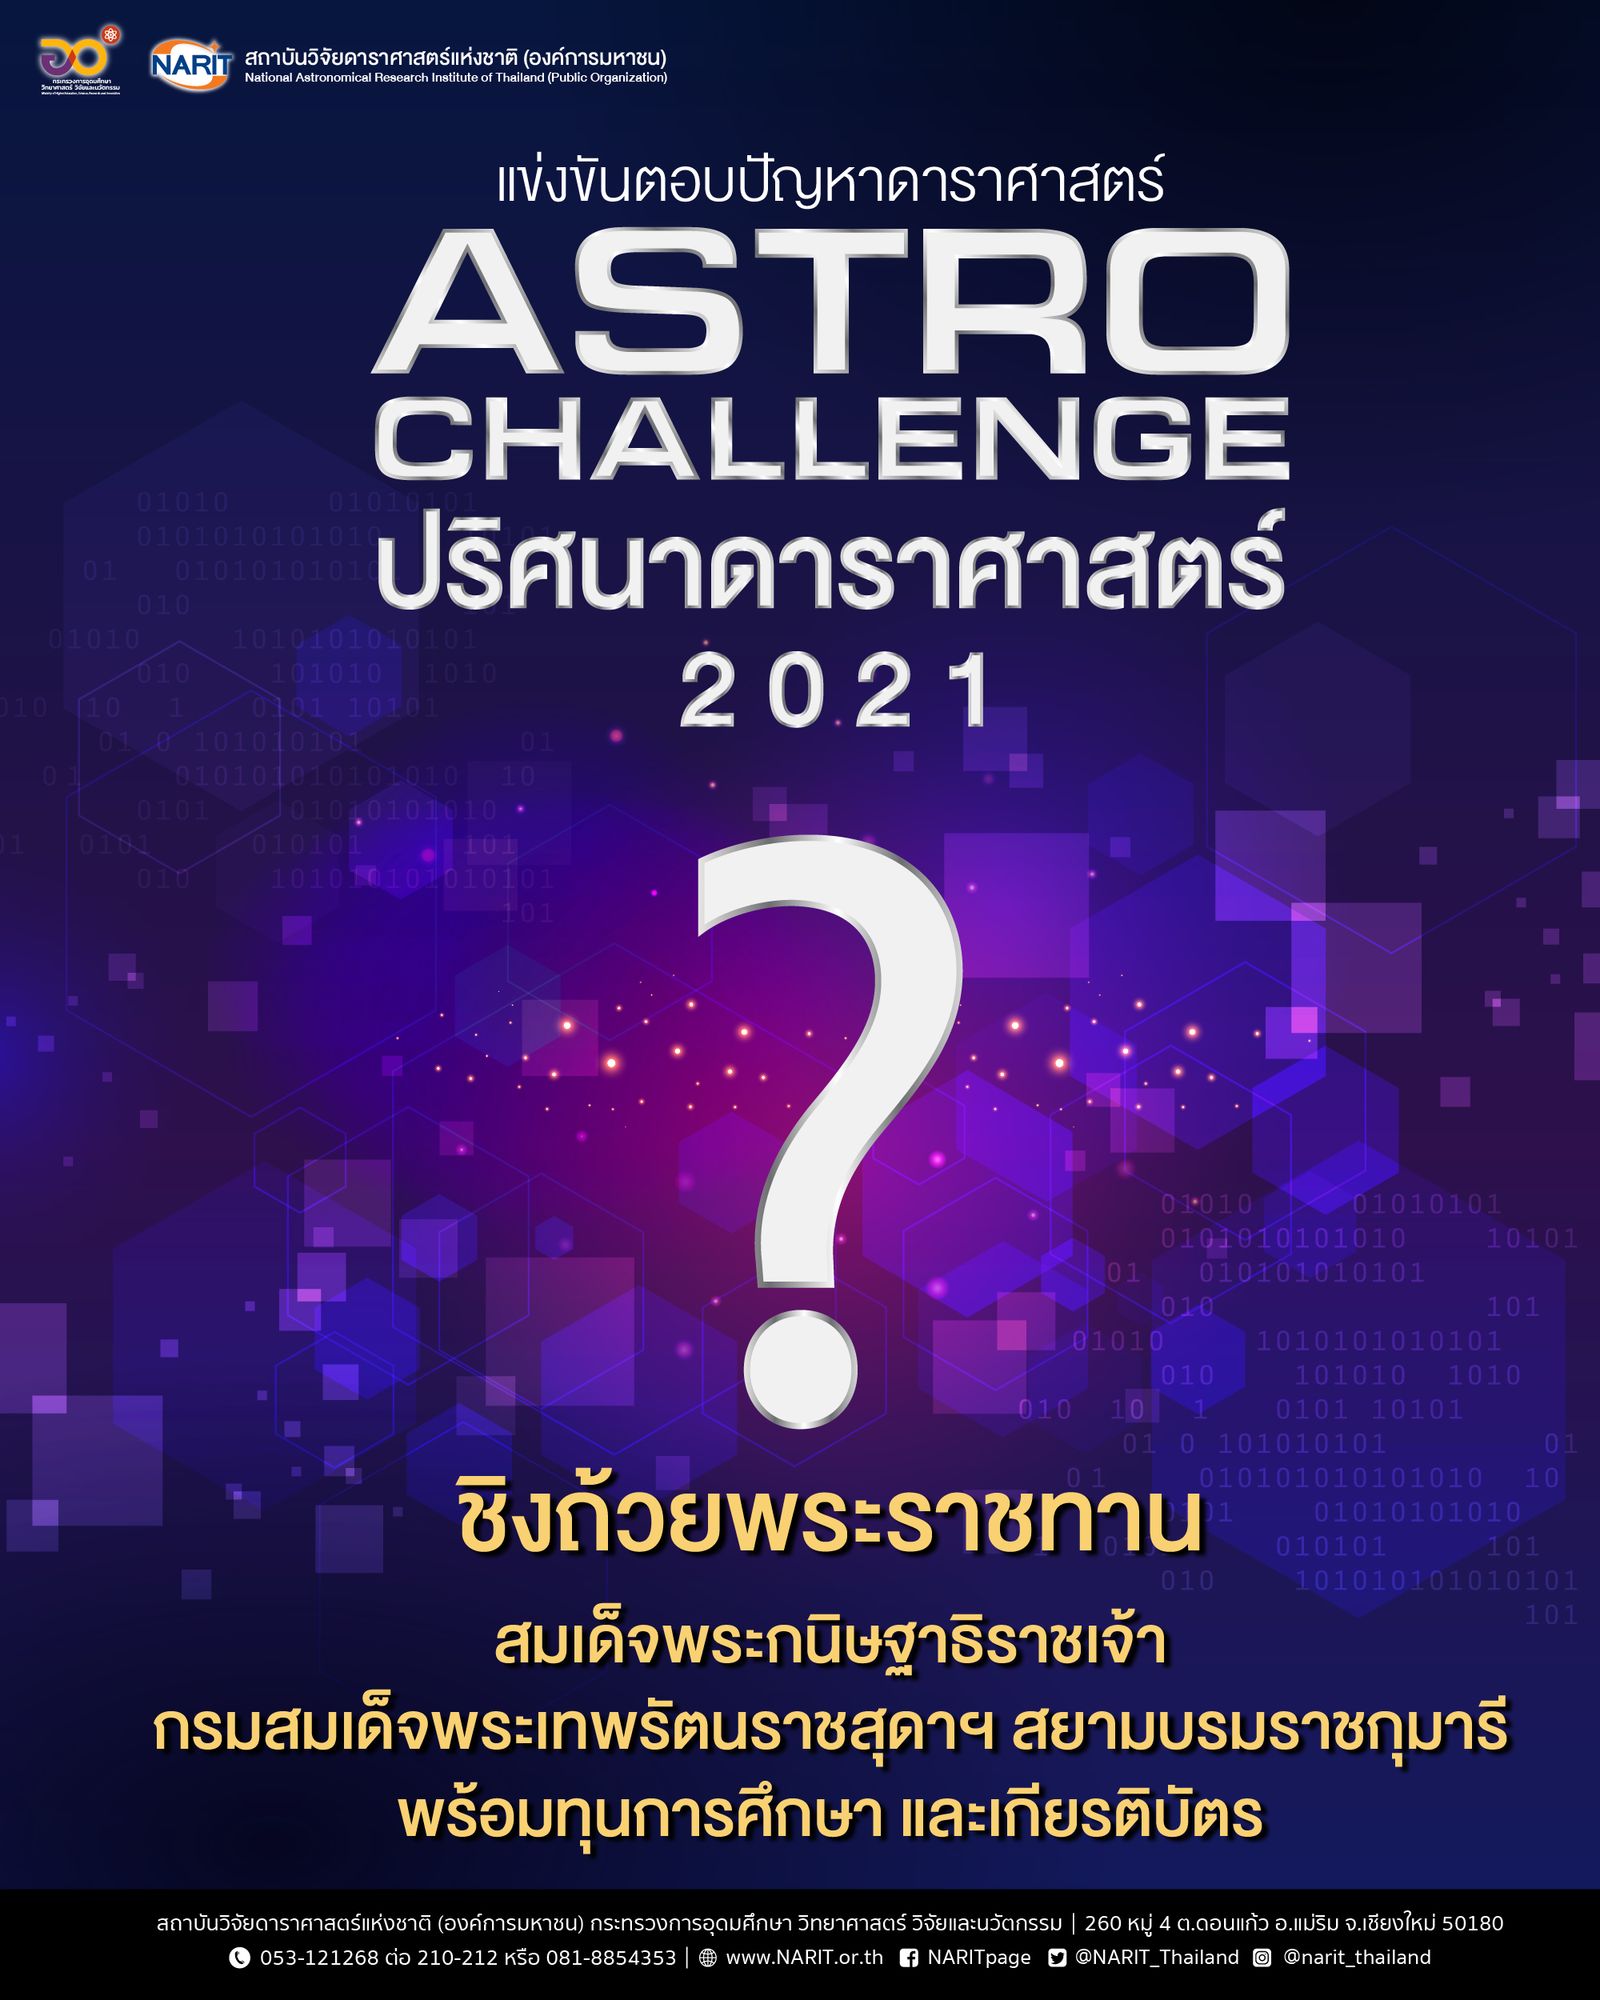 Astro Challenge : ปริศนาดาราศาสตร์" ประจำปี 2564